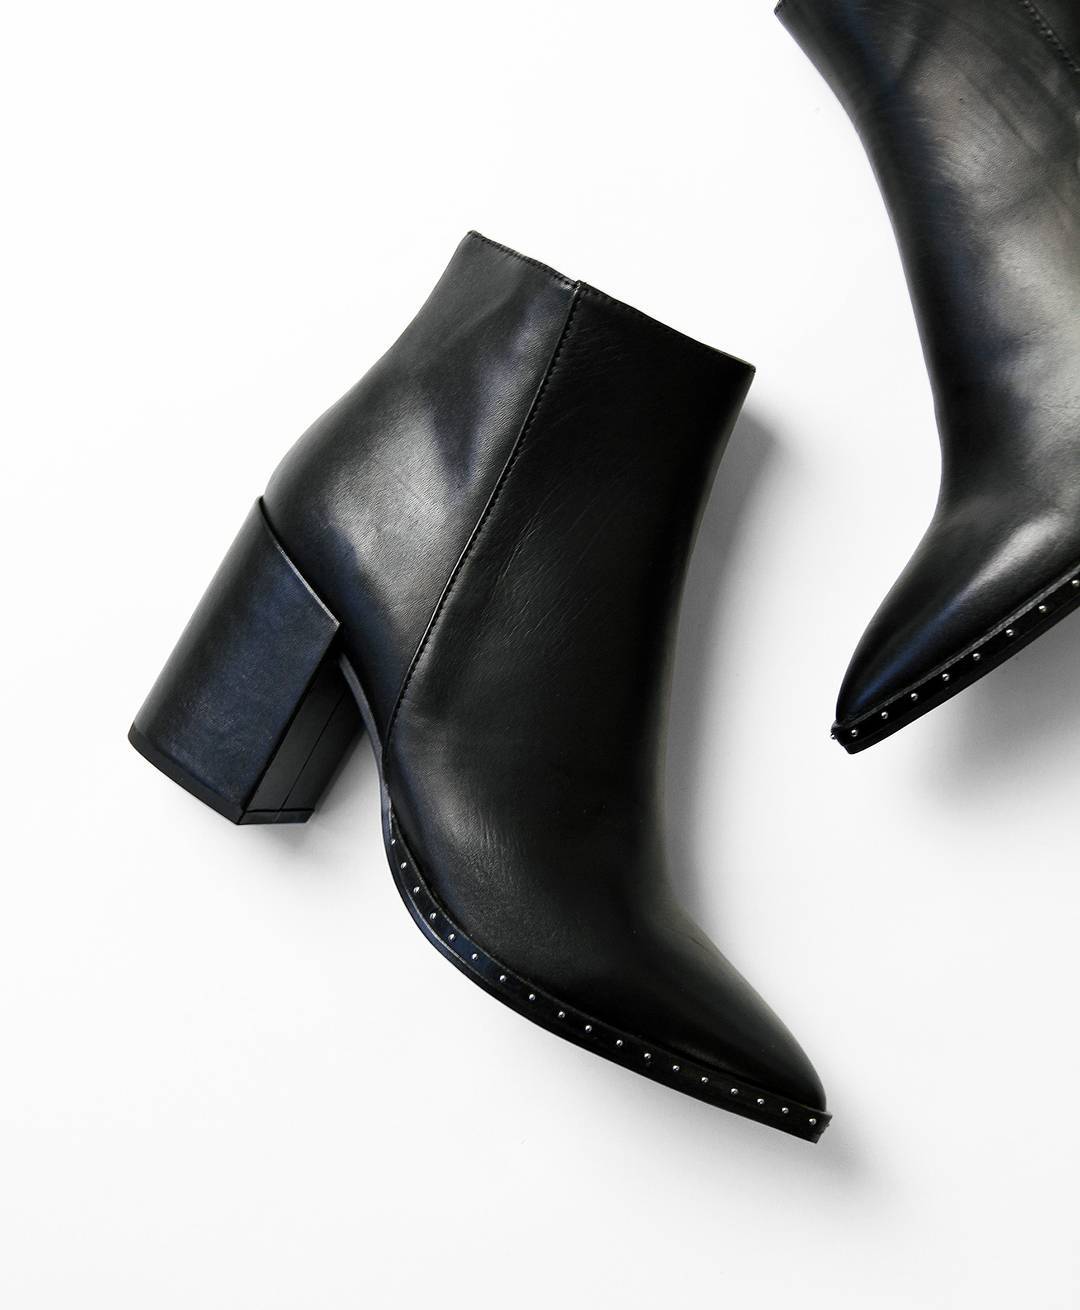 Shaded Botanik hæk Tony Bianco Launches Its Iconic Women's Shoes on Amazon.com